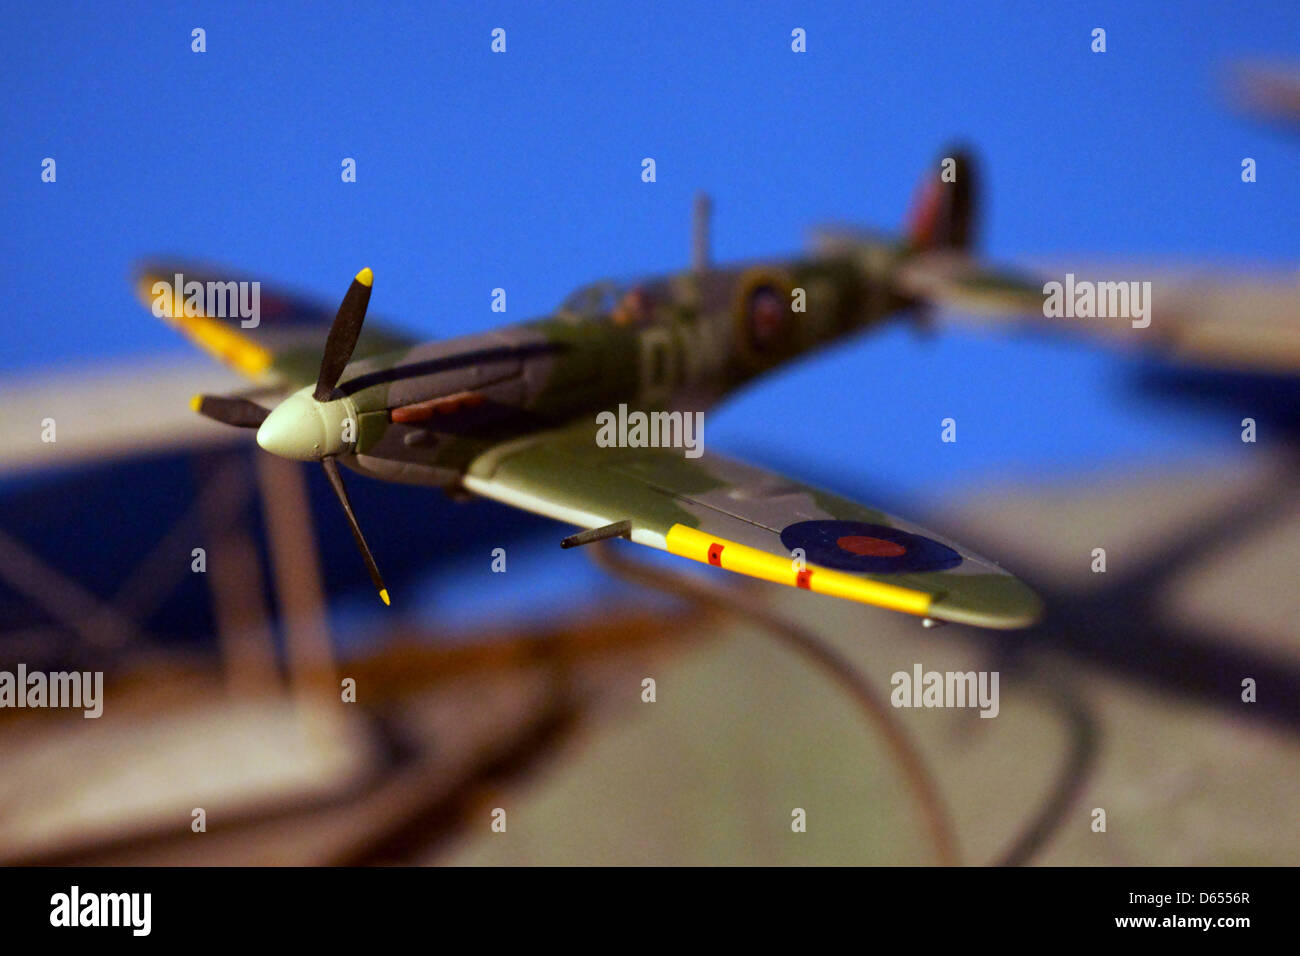 Spitfire Mk5 flying model stand mur bleu ombre Banque D'Images